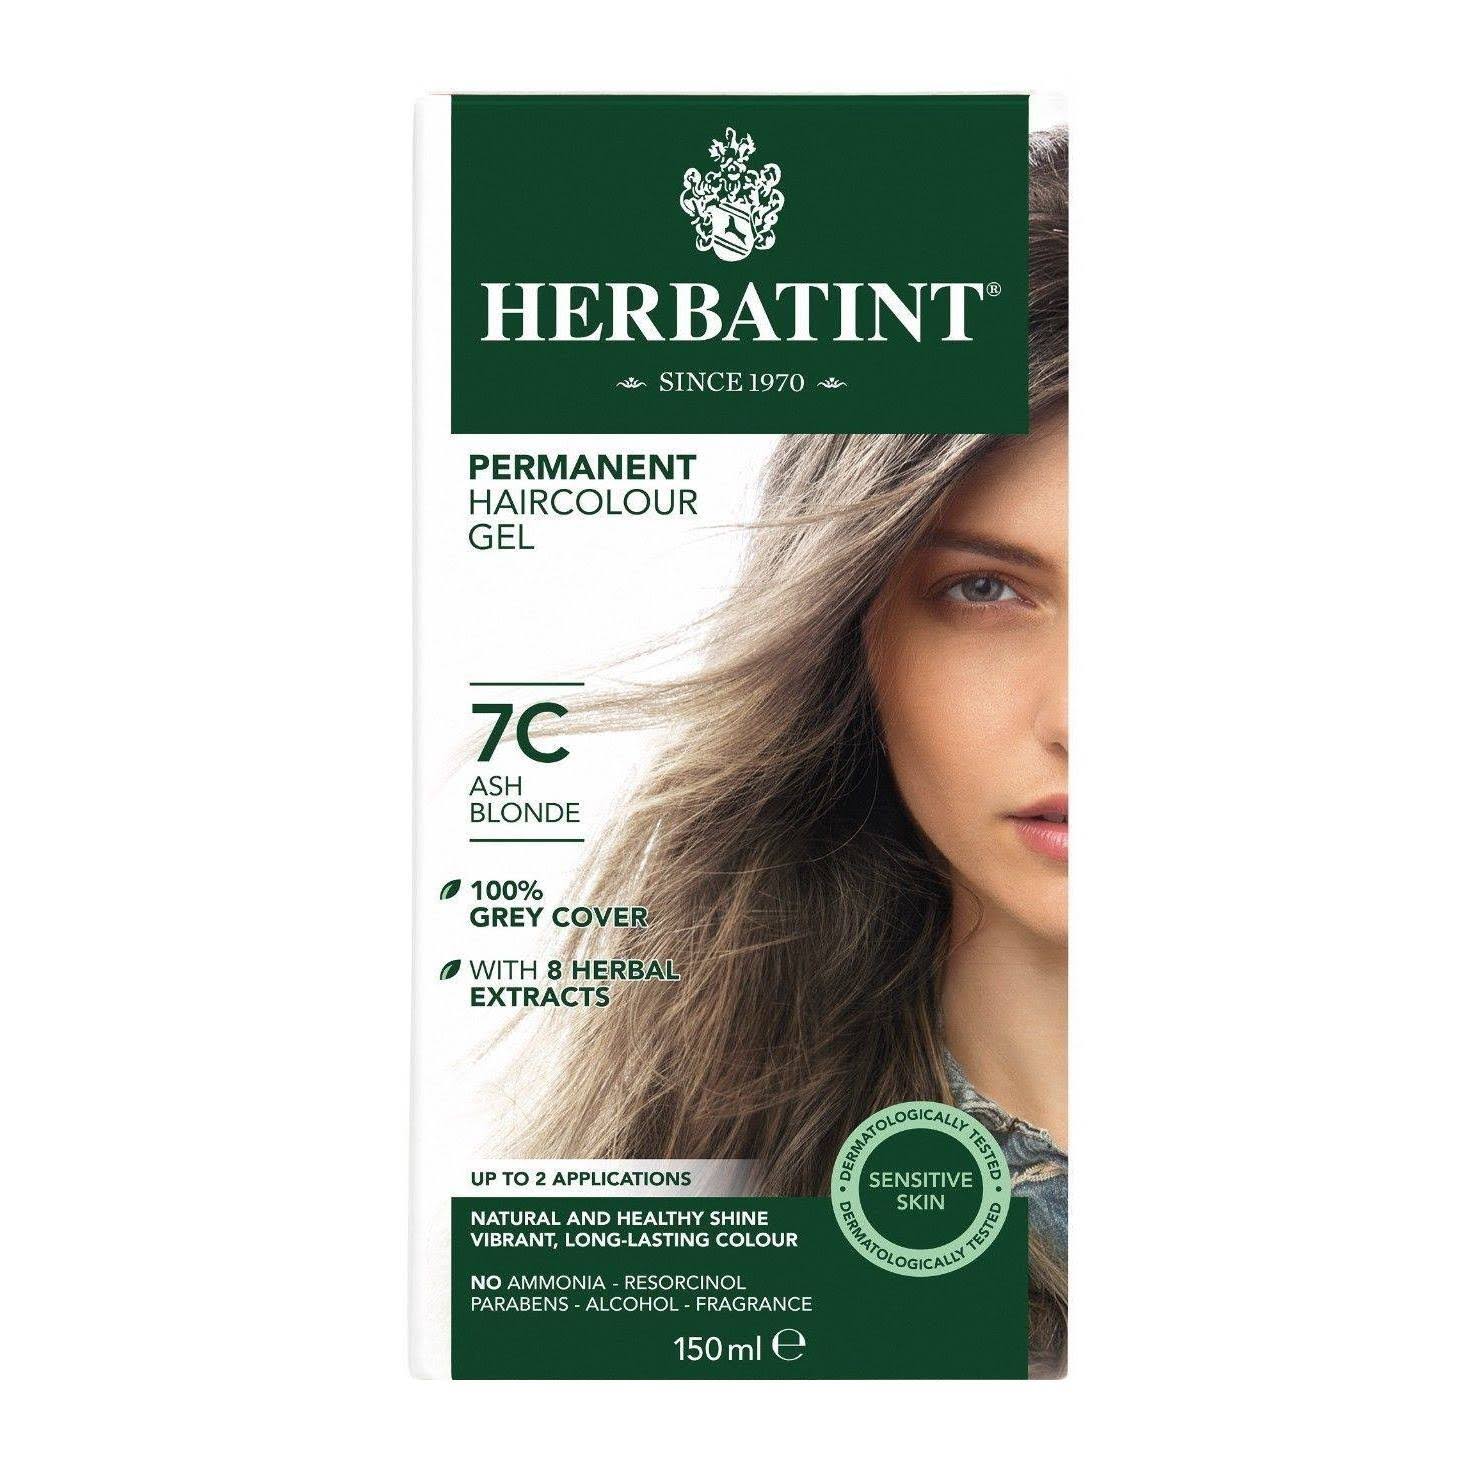 Herbatint Permanent Herbal Hair Colour Gel - 7C Ash Blonde